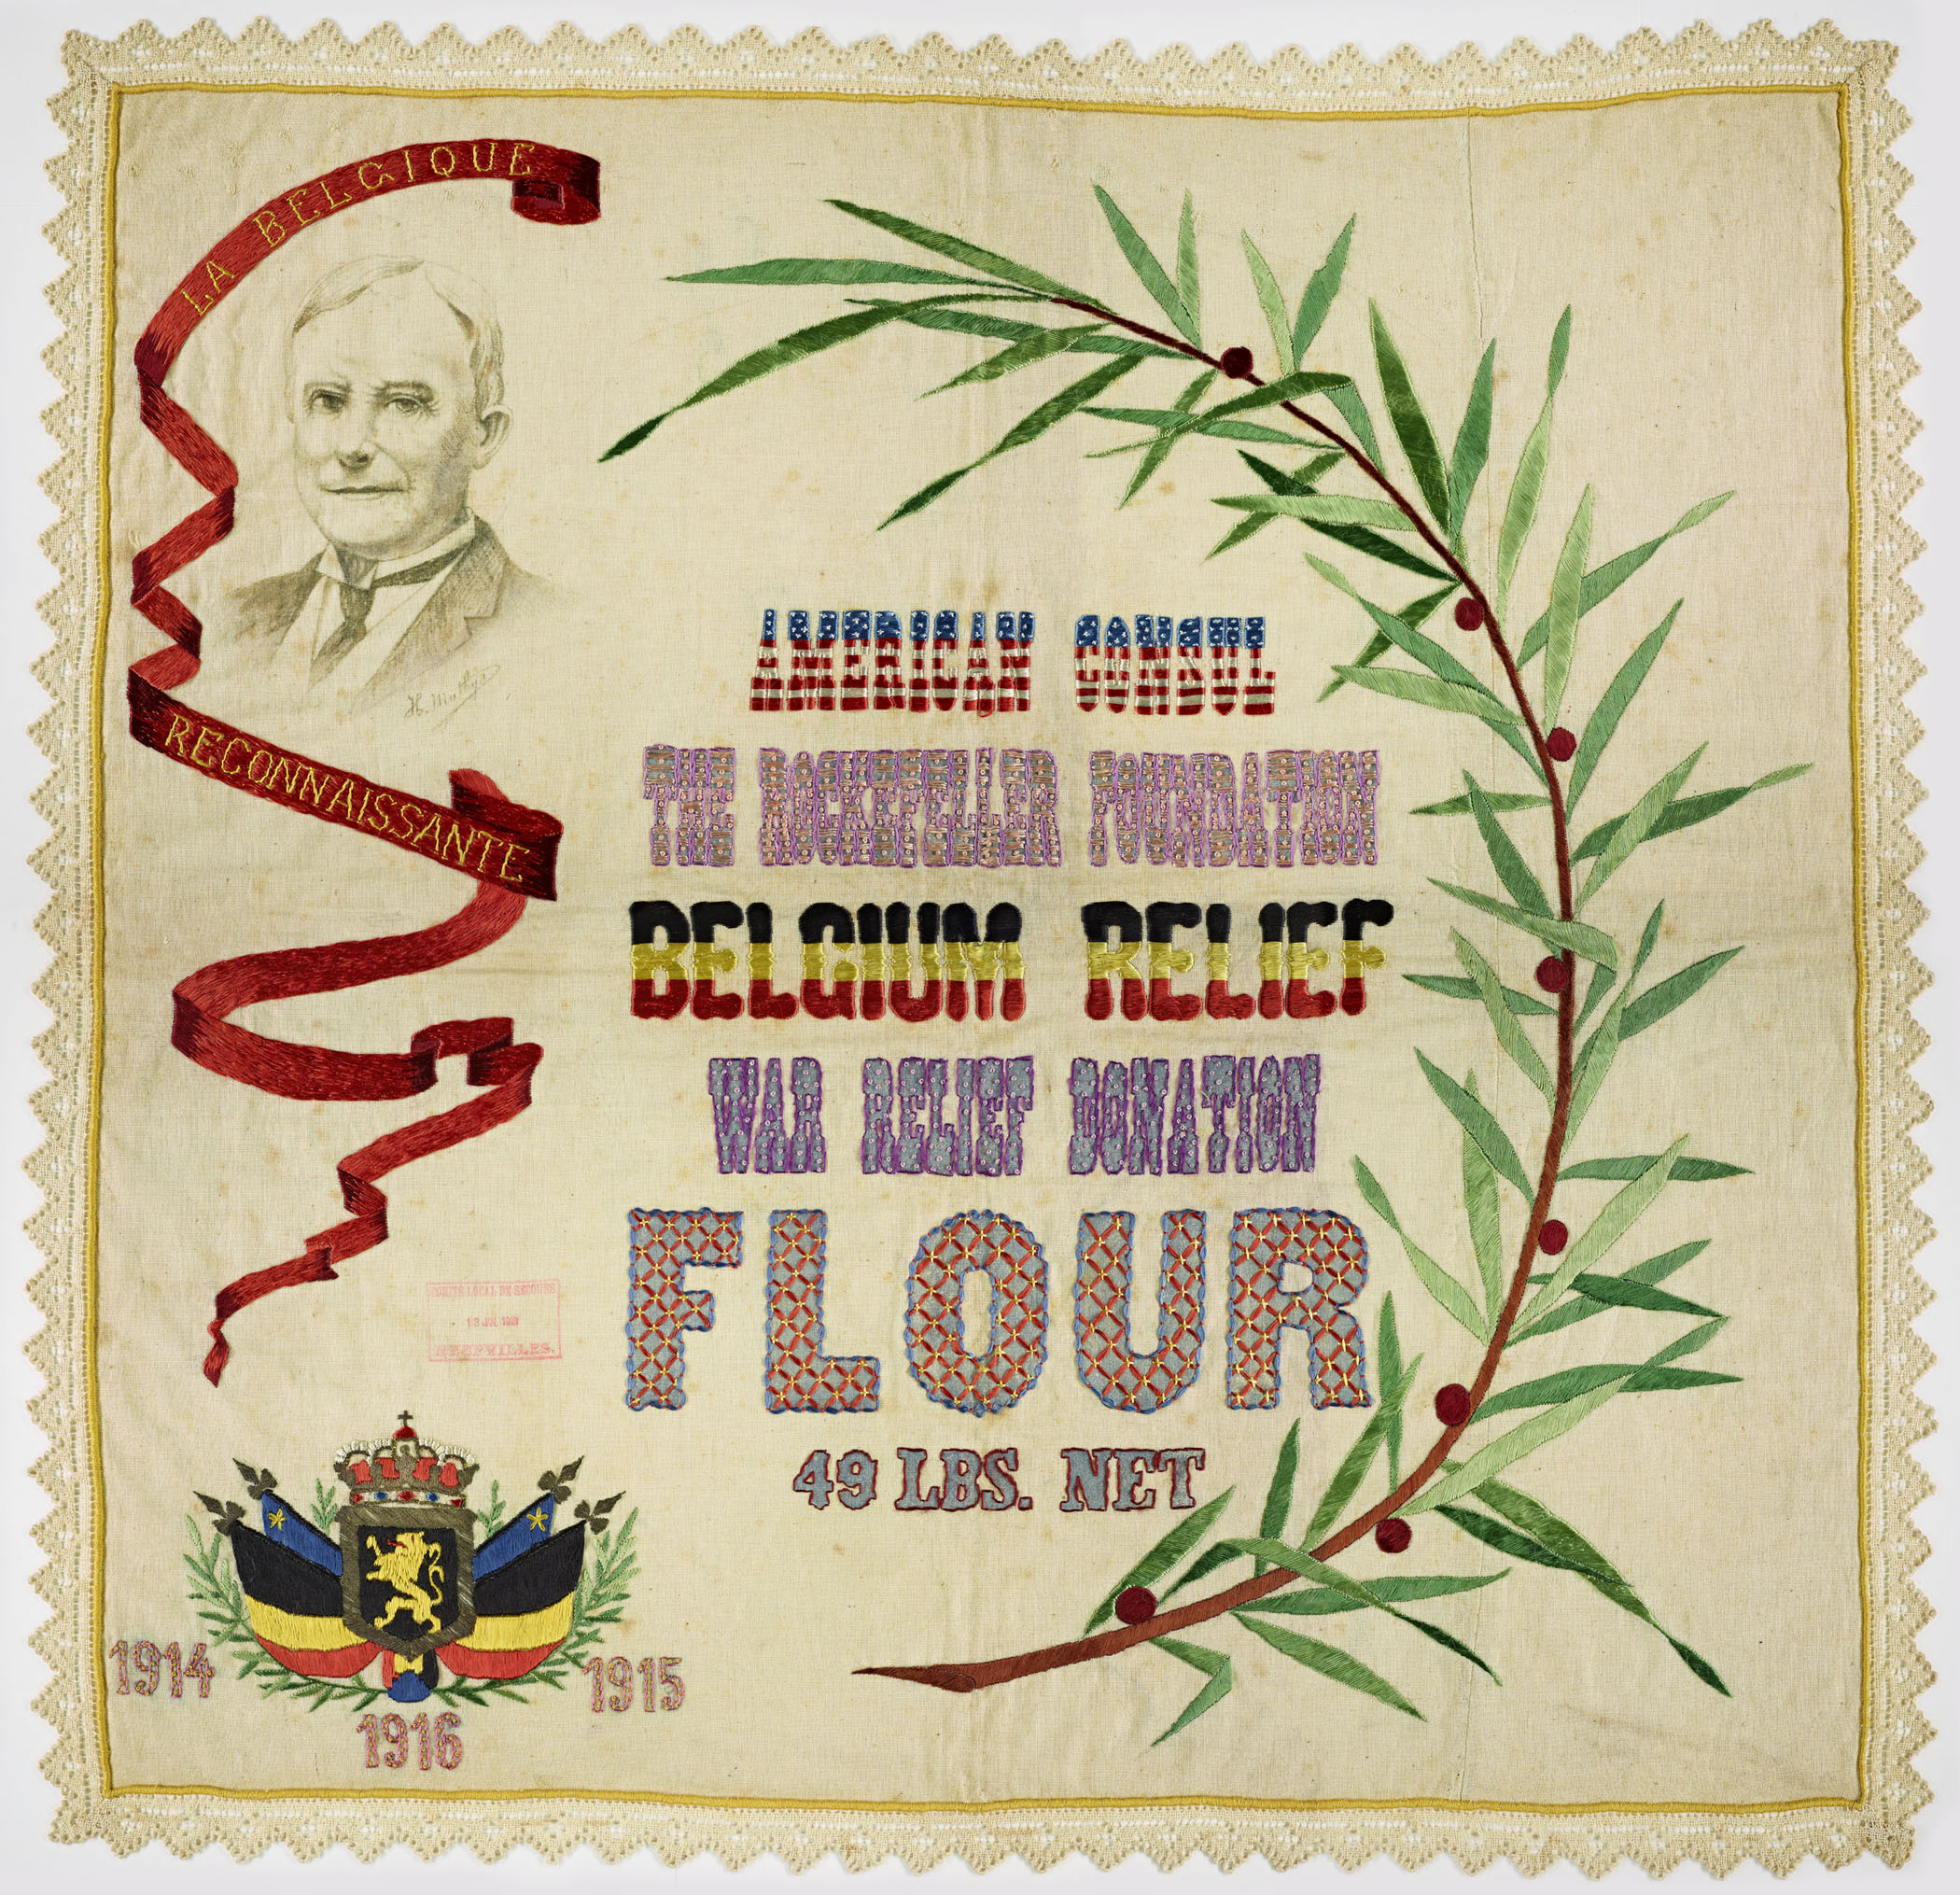 Belgian War Relief Effort Flour Sack